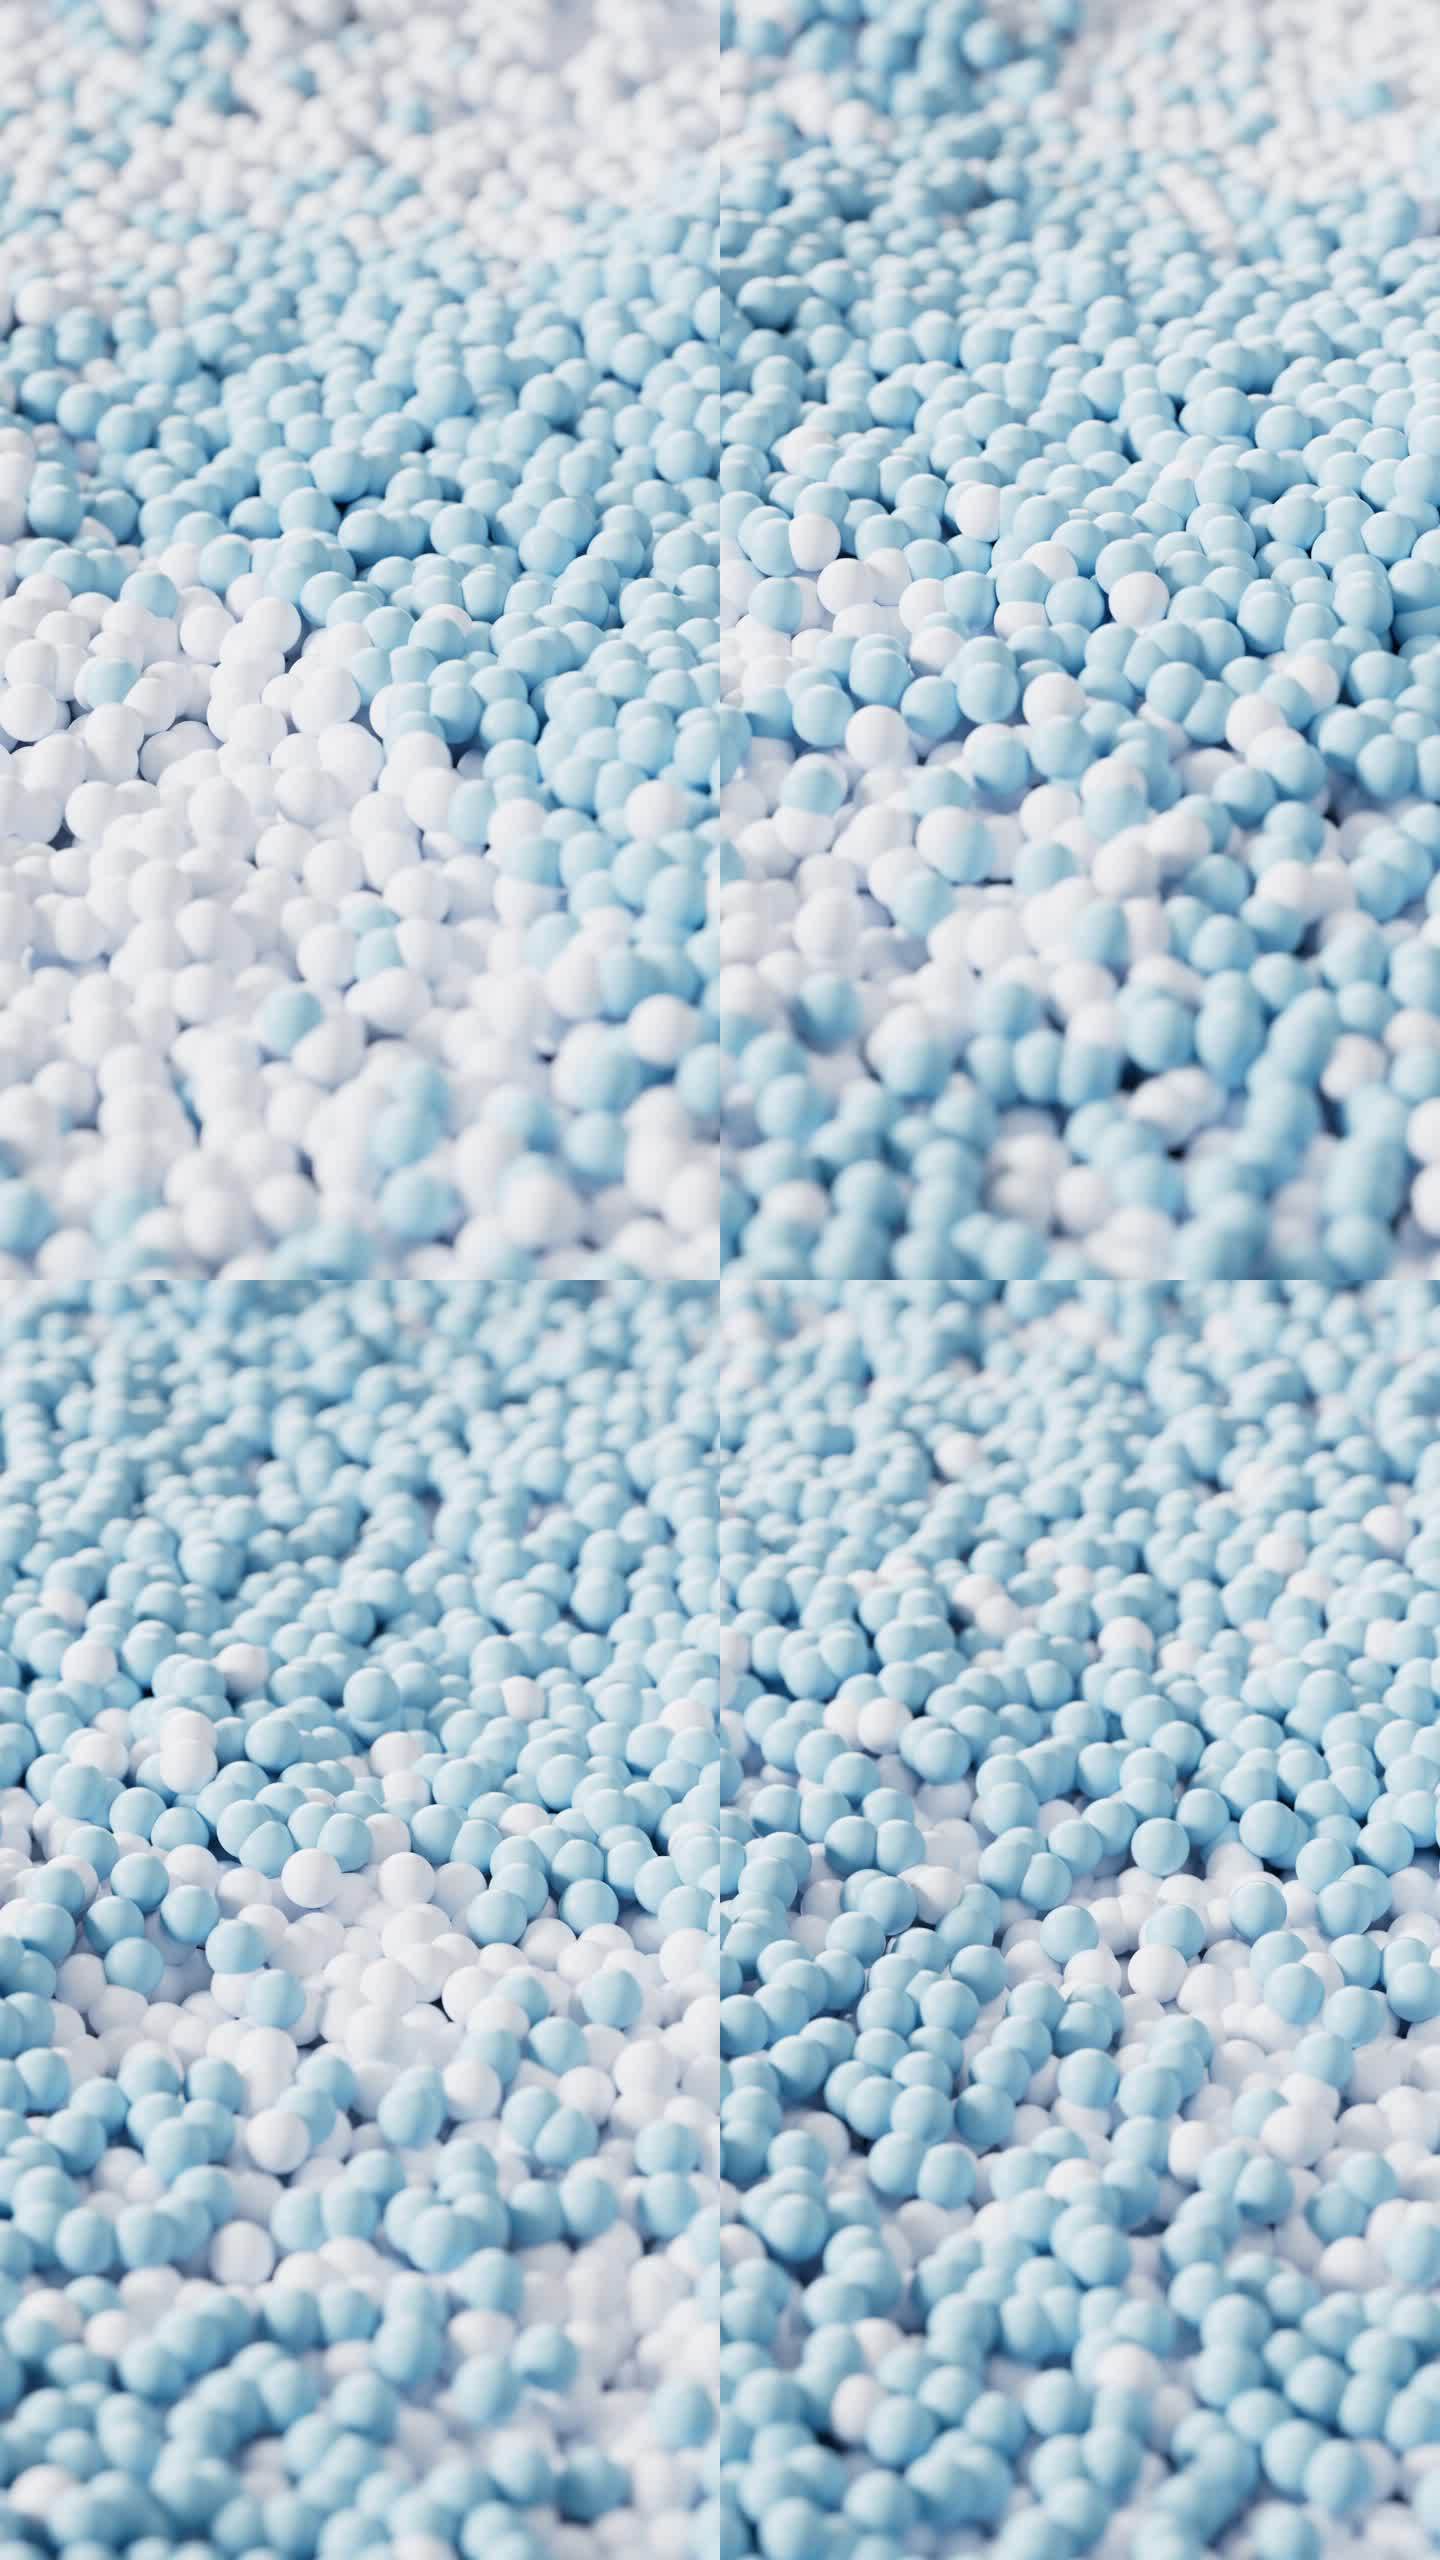 散落流动的蓝色颗粒球体3D渲染